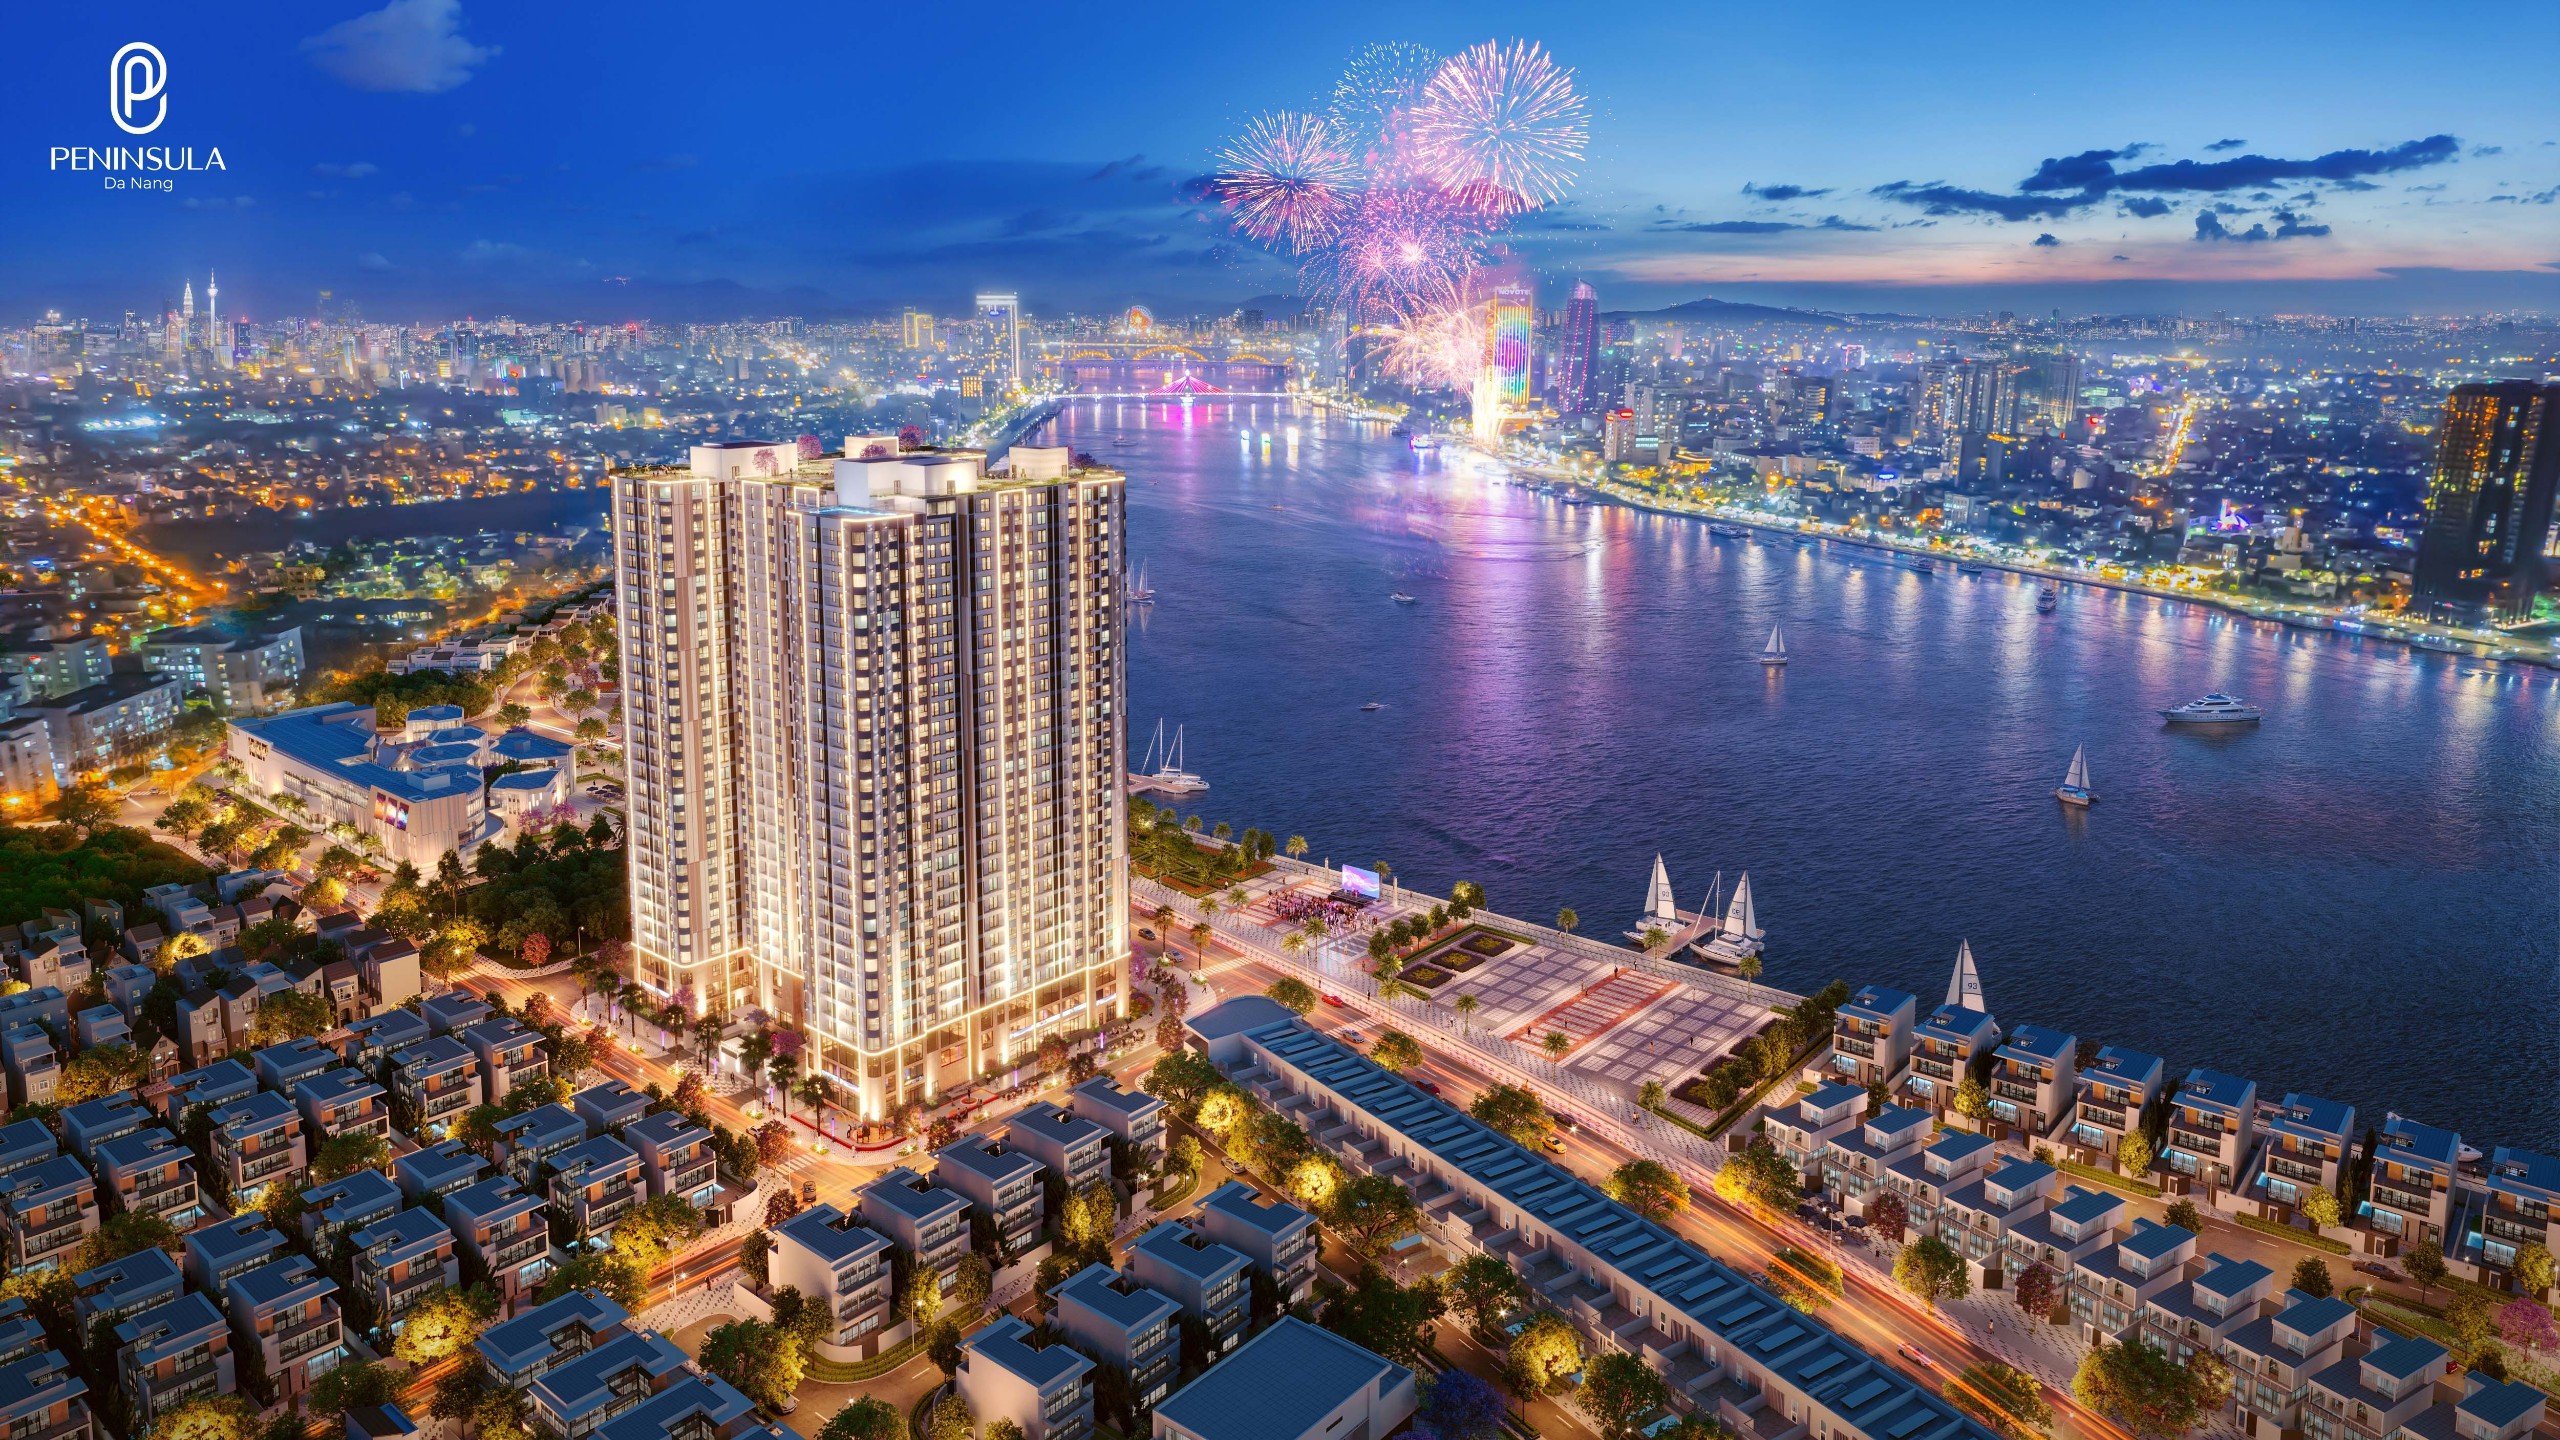 Chu kỳ mới của bất động sản: Dự báo nguồn cung khan hiếm, giá chung cư sẽ còn tăng tiếp - Viet Nam Smart City